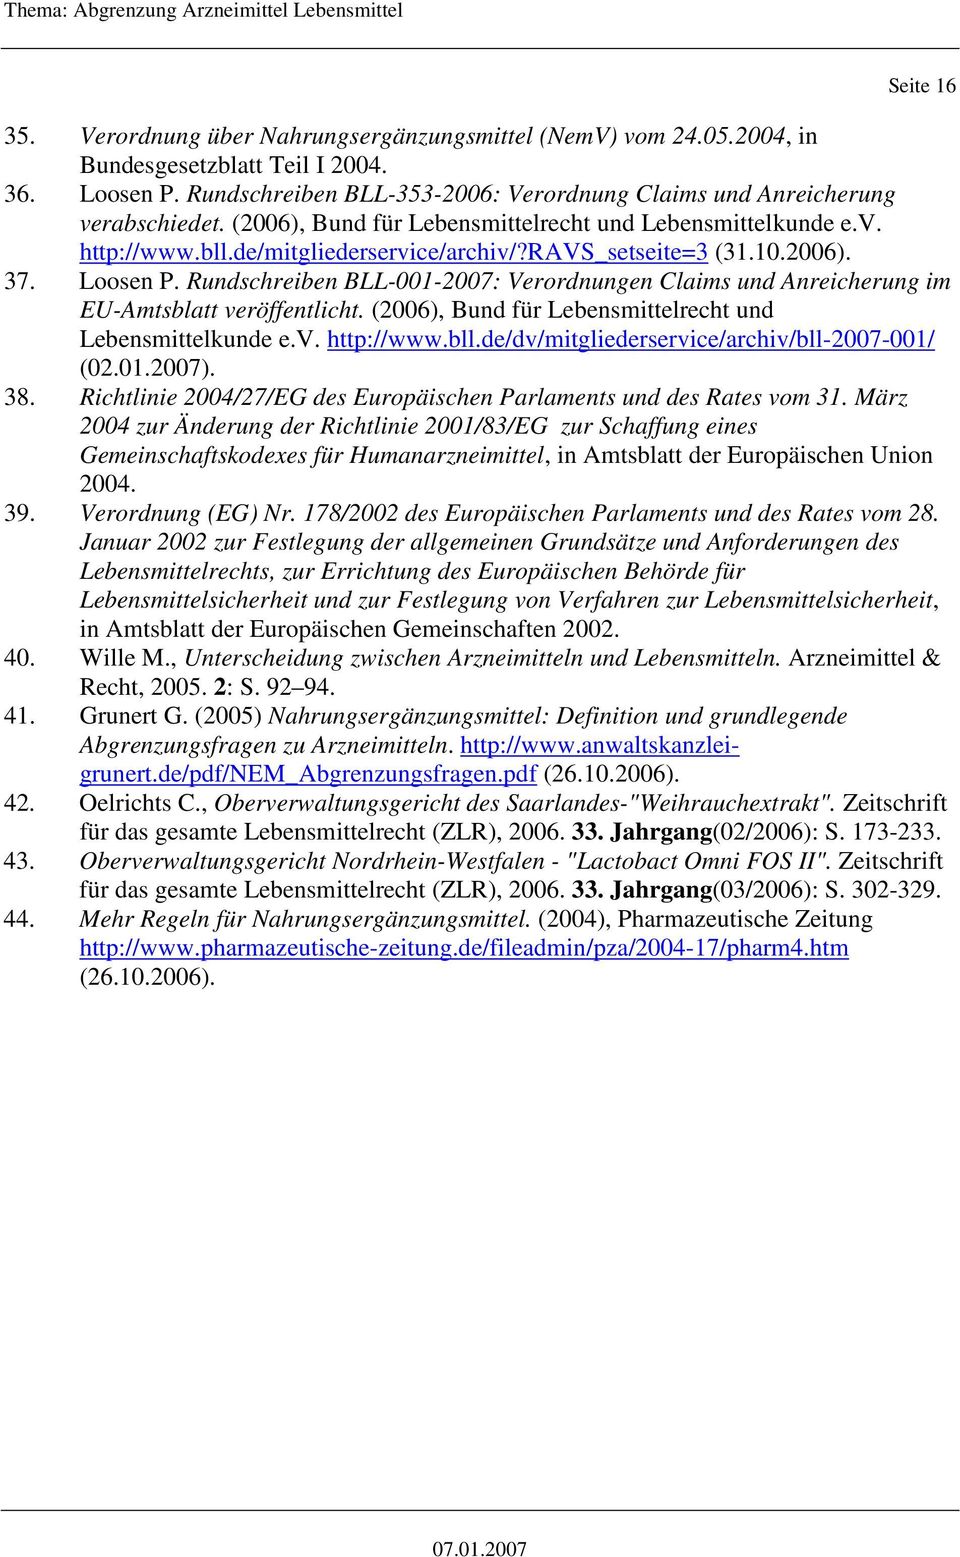 ravs_setseite=3 (31.10.2006). 37. Loosen P. Rundschreiben BLL-001-2007: Verordnungen Claims und Anreicherung im EU-Amtsblatt veröffentlicht. (2006), Bund für Lebensmittelrecht und Lebensmittelkunde e.